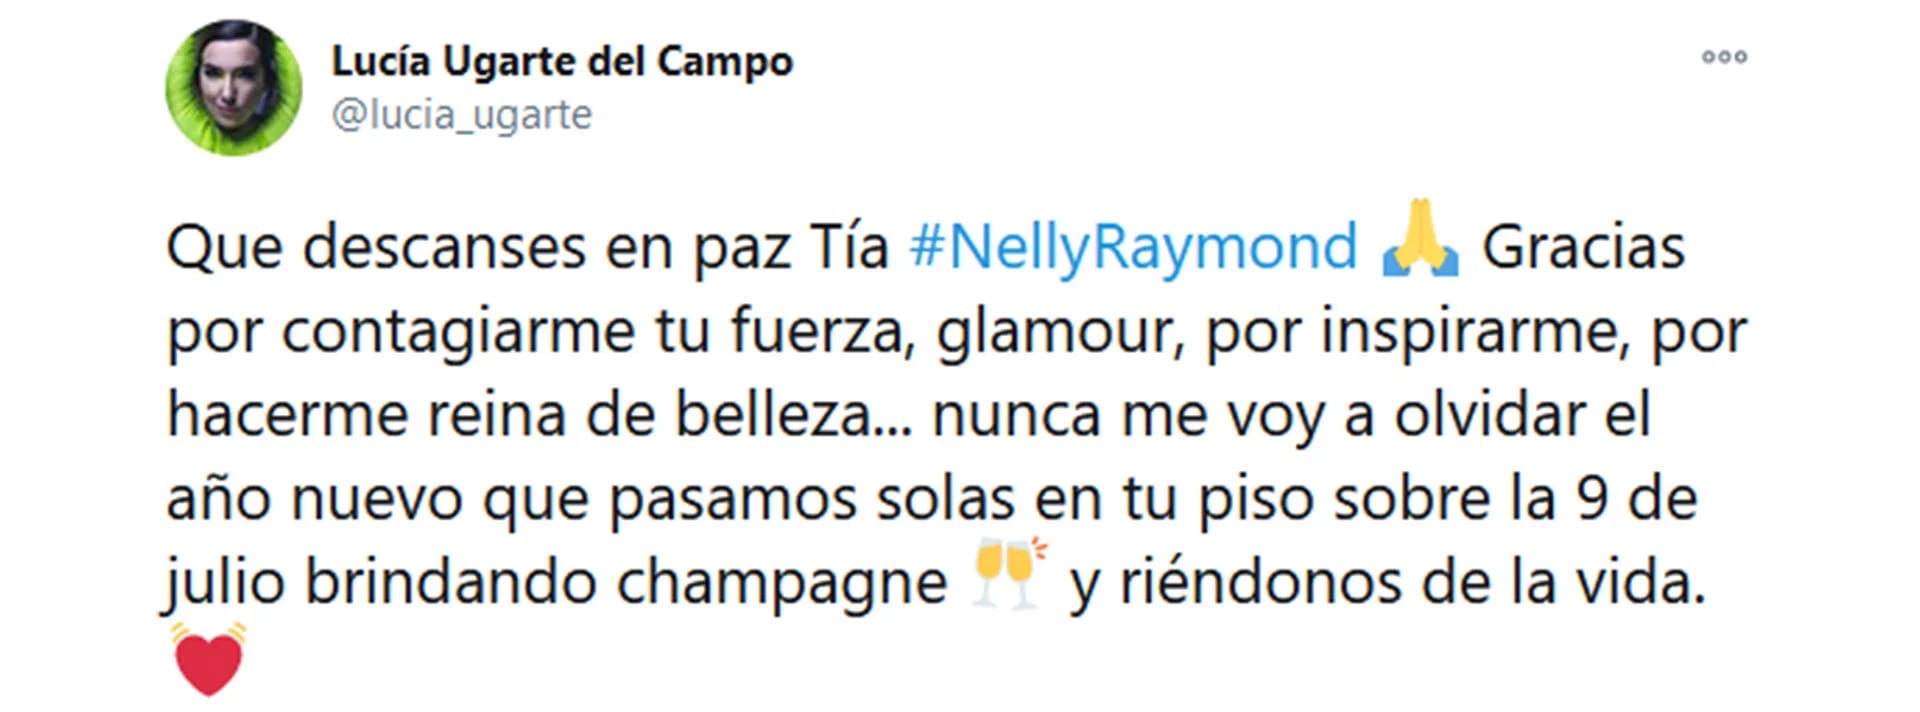 El tuit de Lucía Ugarte para despedir a su tía abuela Nelly Raymond